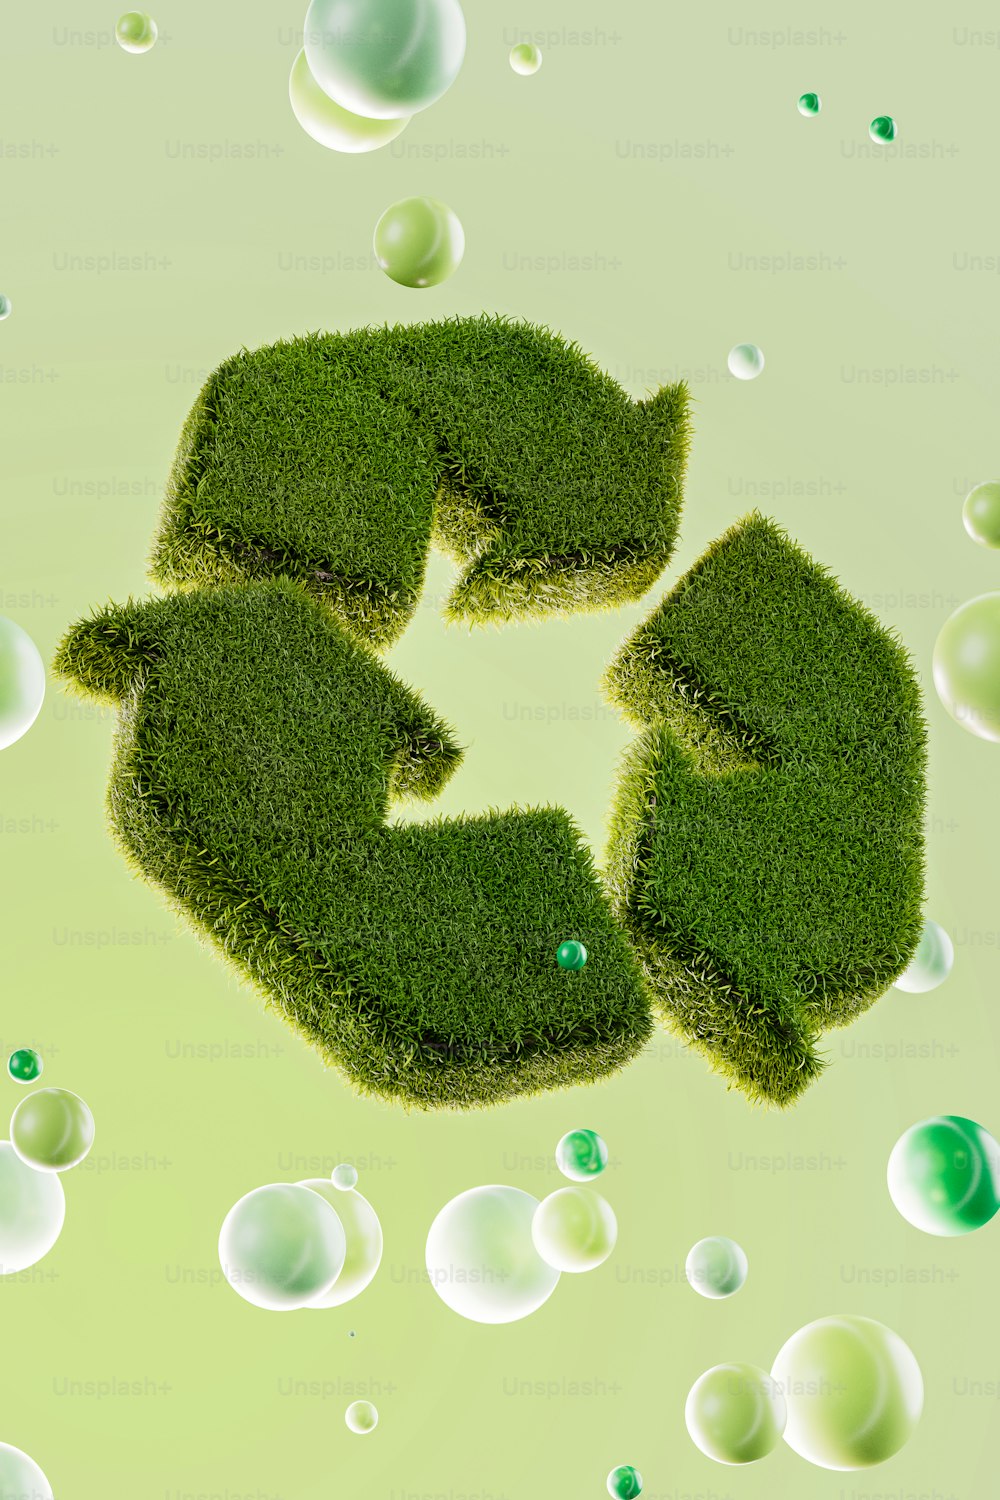 Ein grünes Recyclingprodukt aus Gras und Blasen